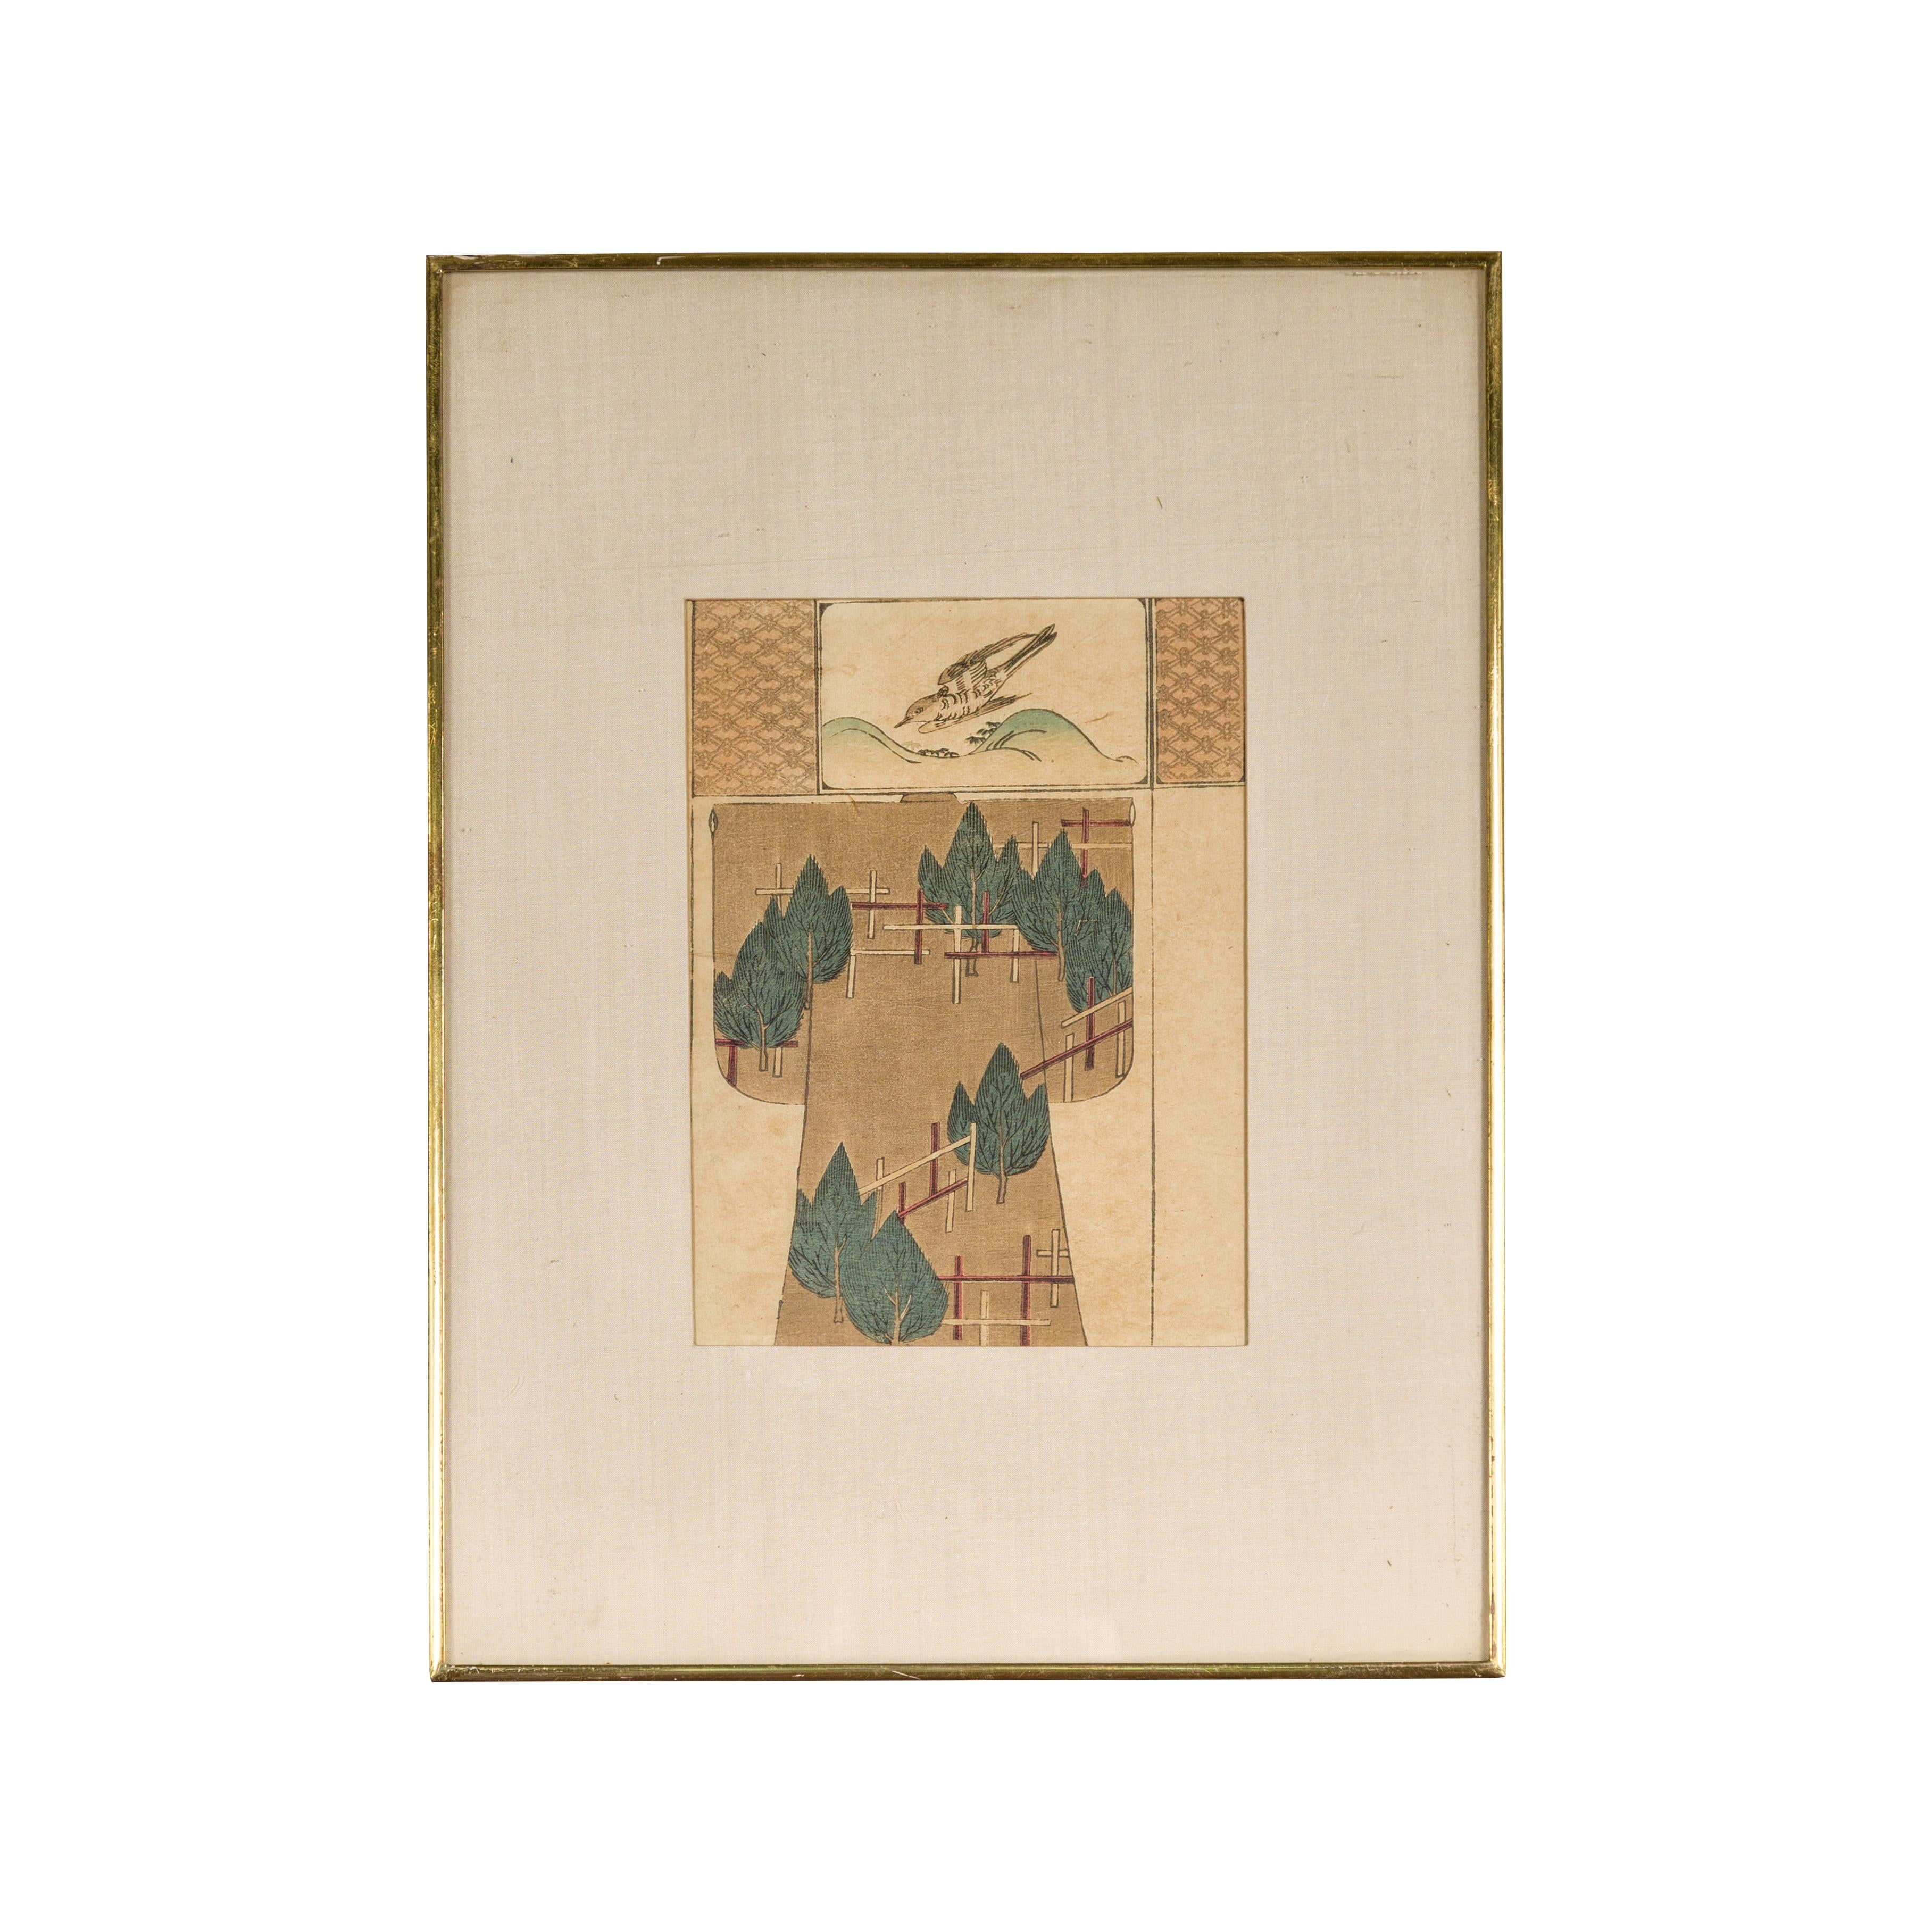 Ein antiker japanischer Farbholzschnitt, der einen Vogel und Bäume darstellt, in einem individuellen Rahmen. Tauchen Sie ein in die ruhige Schönheit dieses antiken japanischen Holzschnitts, der die Essenz der minimalistischen Eleganz meisterhaft